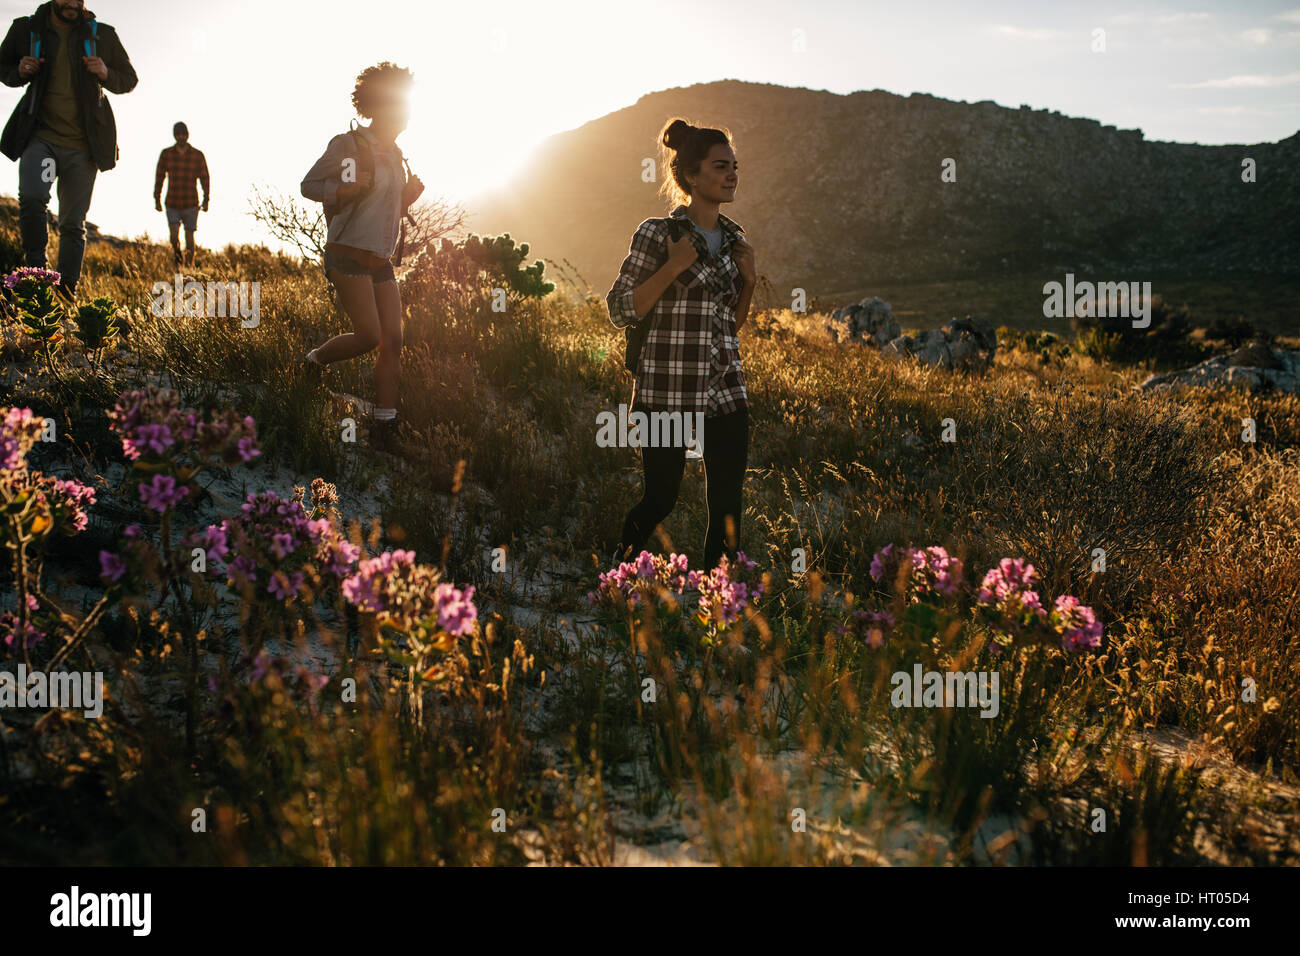 Gruppe von Freunden sind in den Bergen wandern, an einem sonnigen Tag. Vier junge Menschen zu Fuß durch die Landschaft. Stockfoto